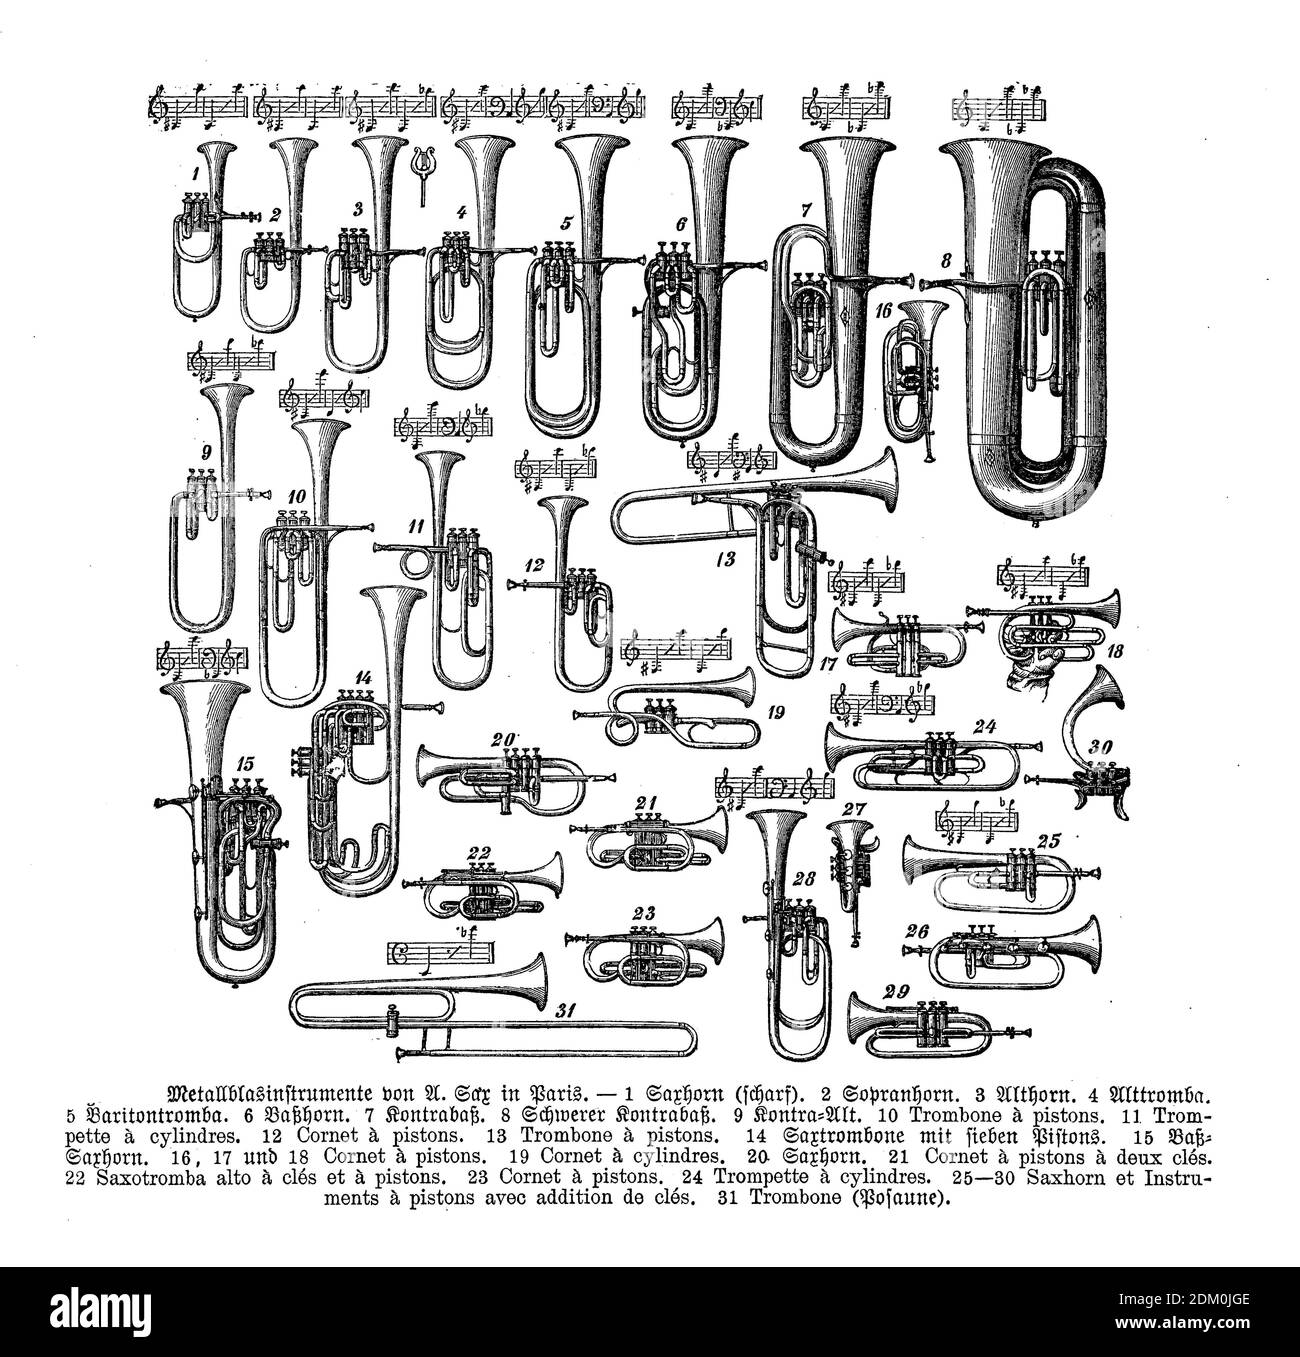 Catalogue avec divers instruments de musique en laiton Adolphe Sax, dont saxons, saxophones et saxotrombas, gravure du XIXe siècle avec descriptions allemandes Banque D'Images